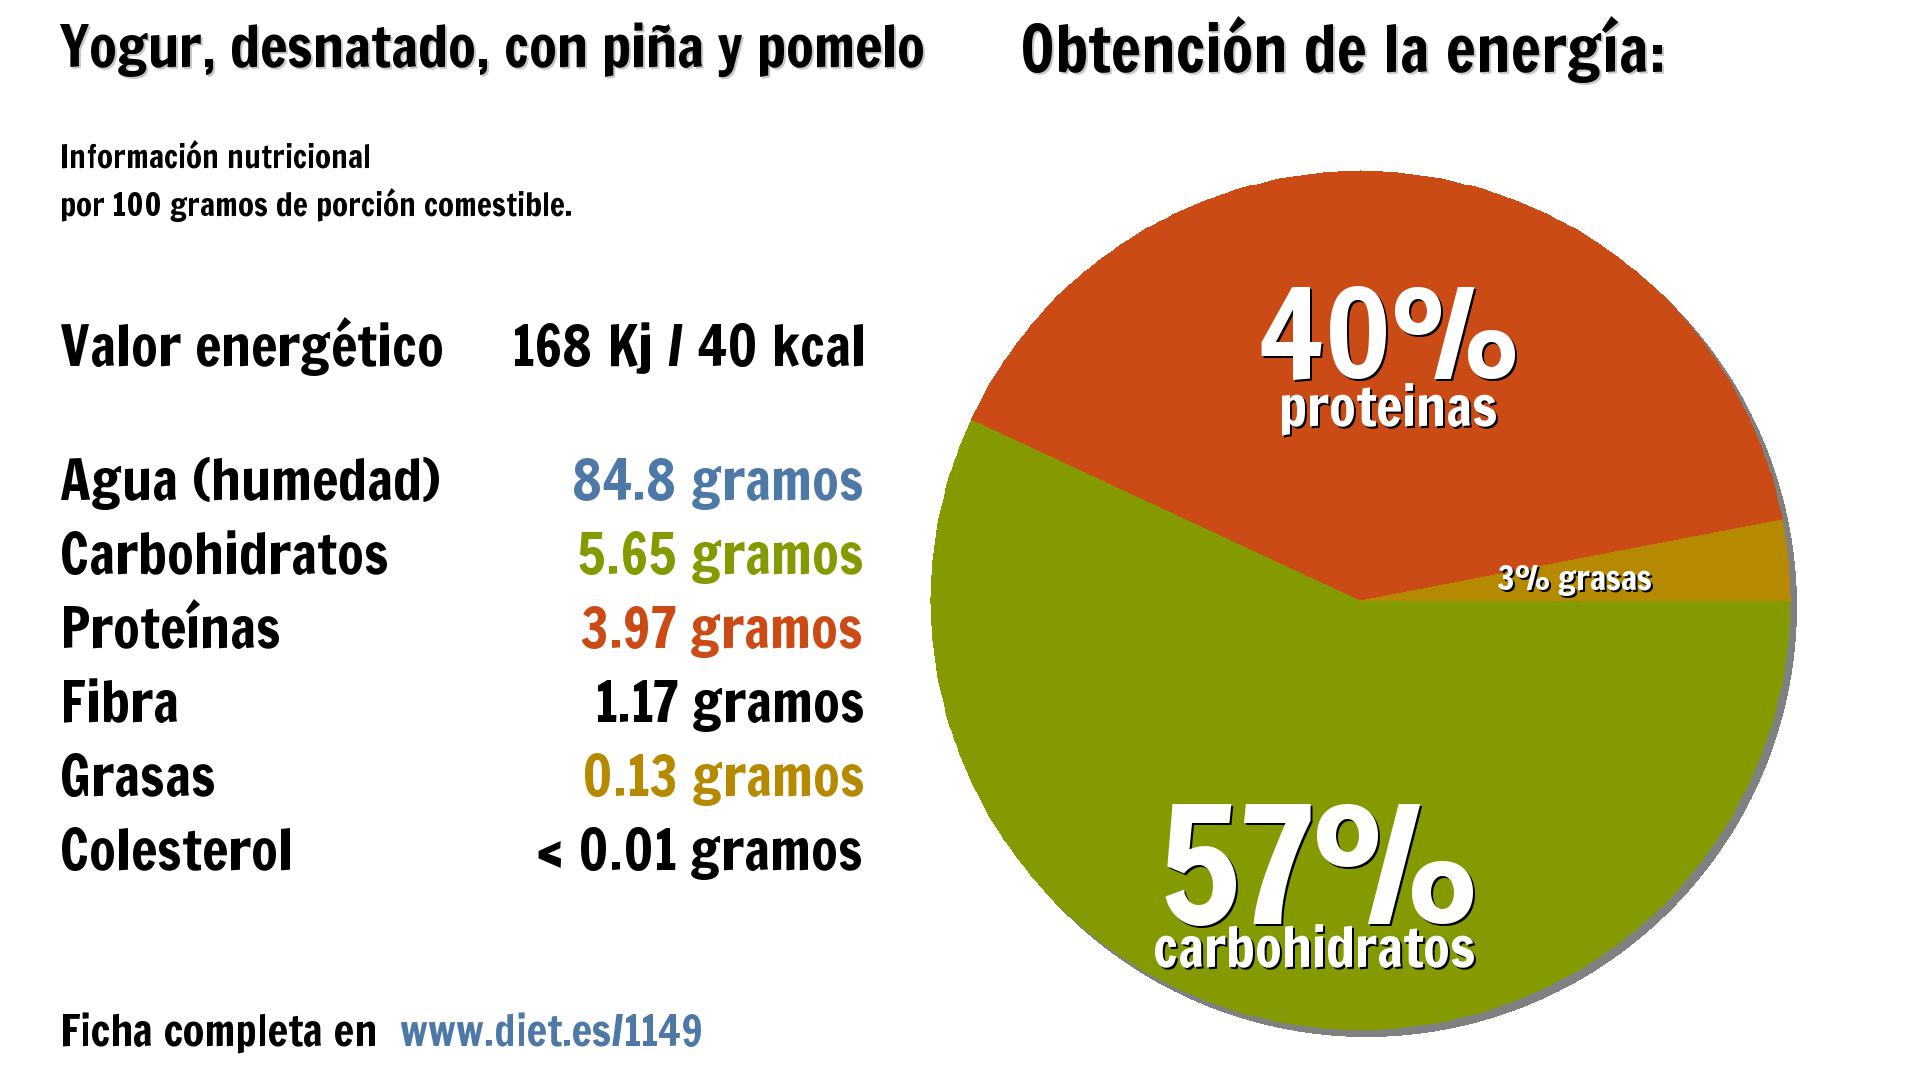 Yogur, desnatado, con piña y pomelo: energía 168 Kj, agua 85 g., carbohidratos 6 g., proteínas 4 g. y fibra 1 g.